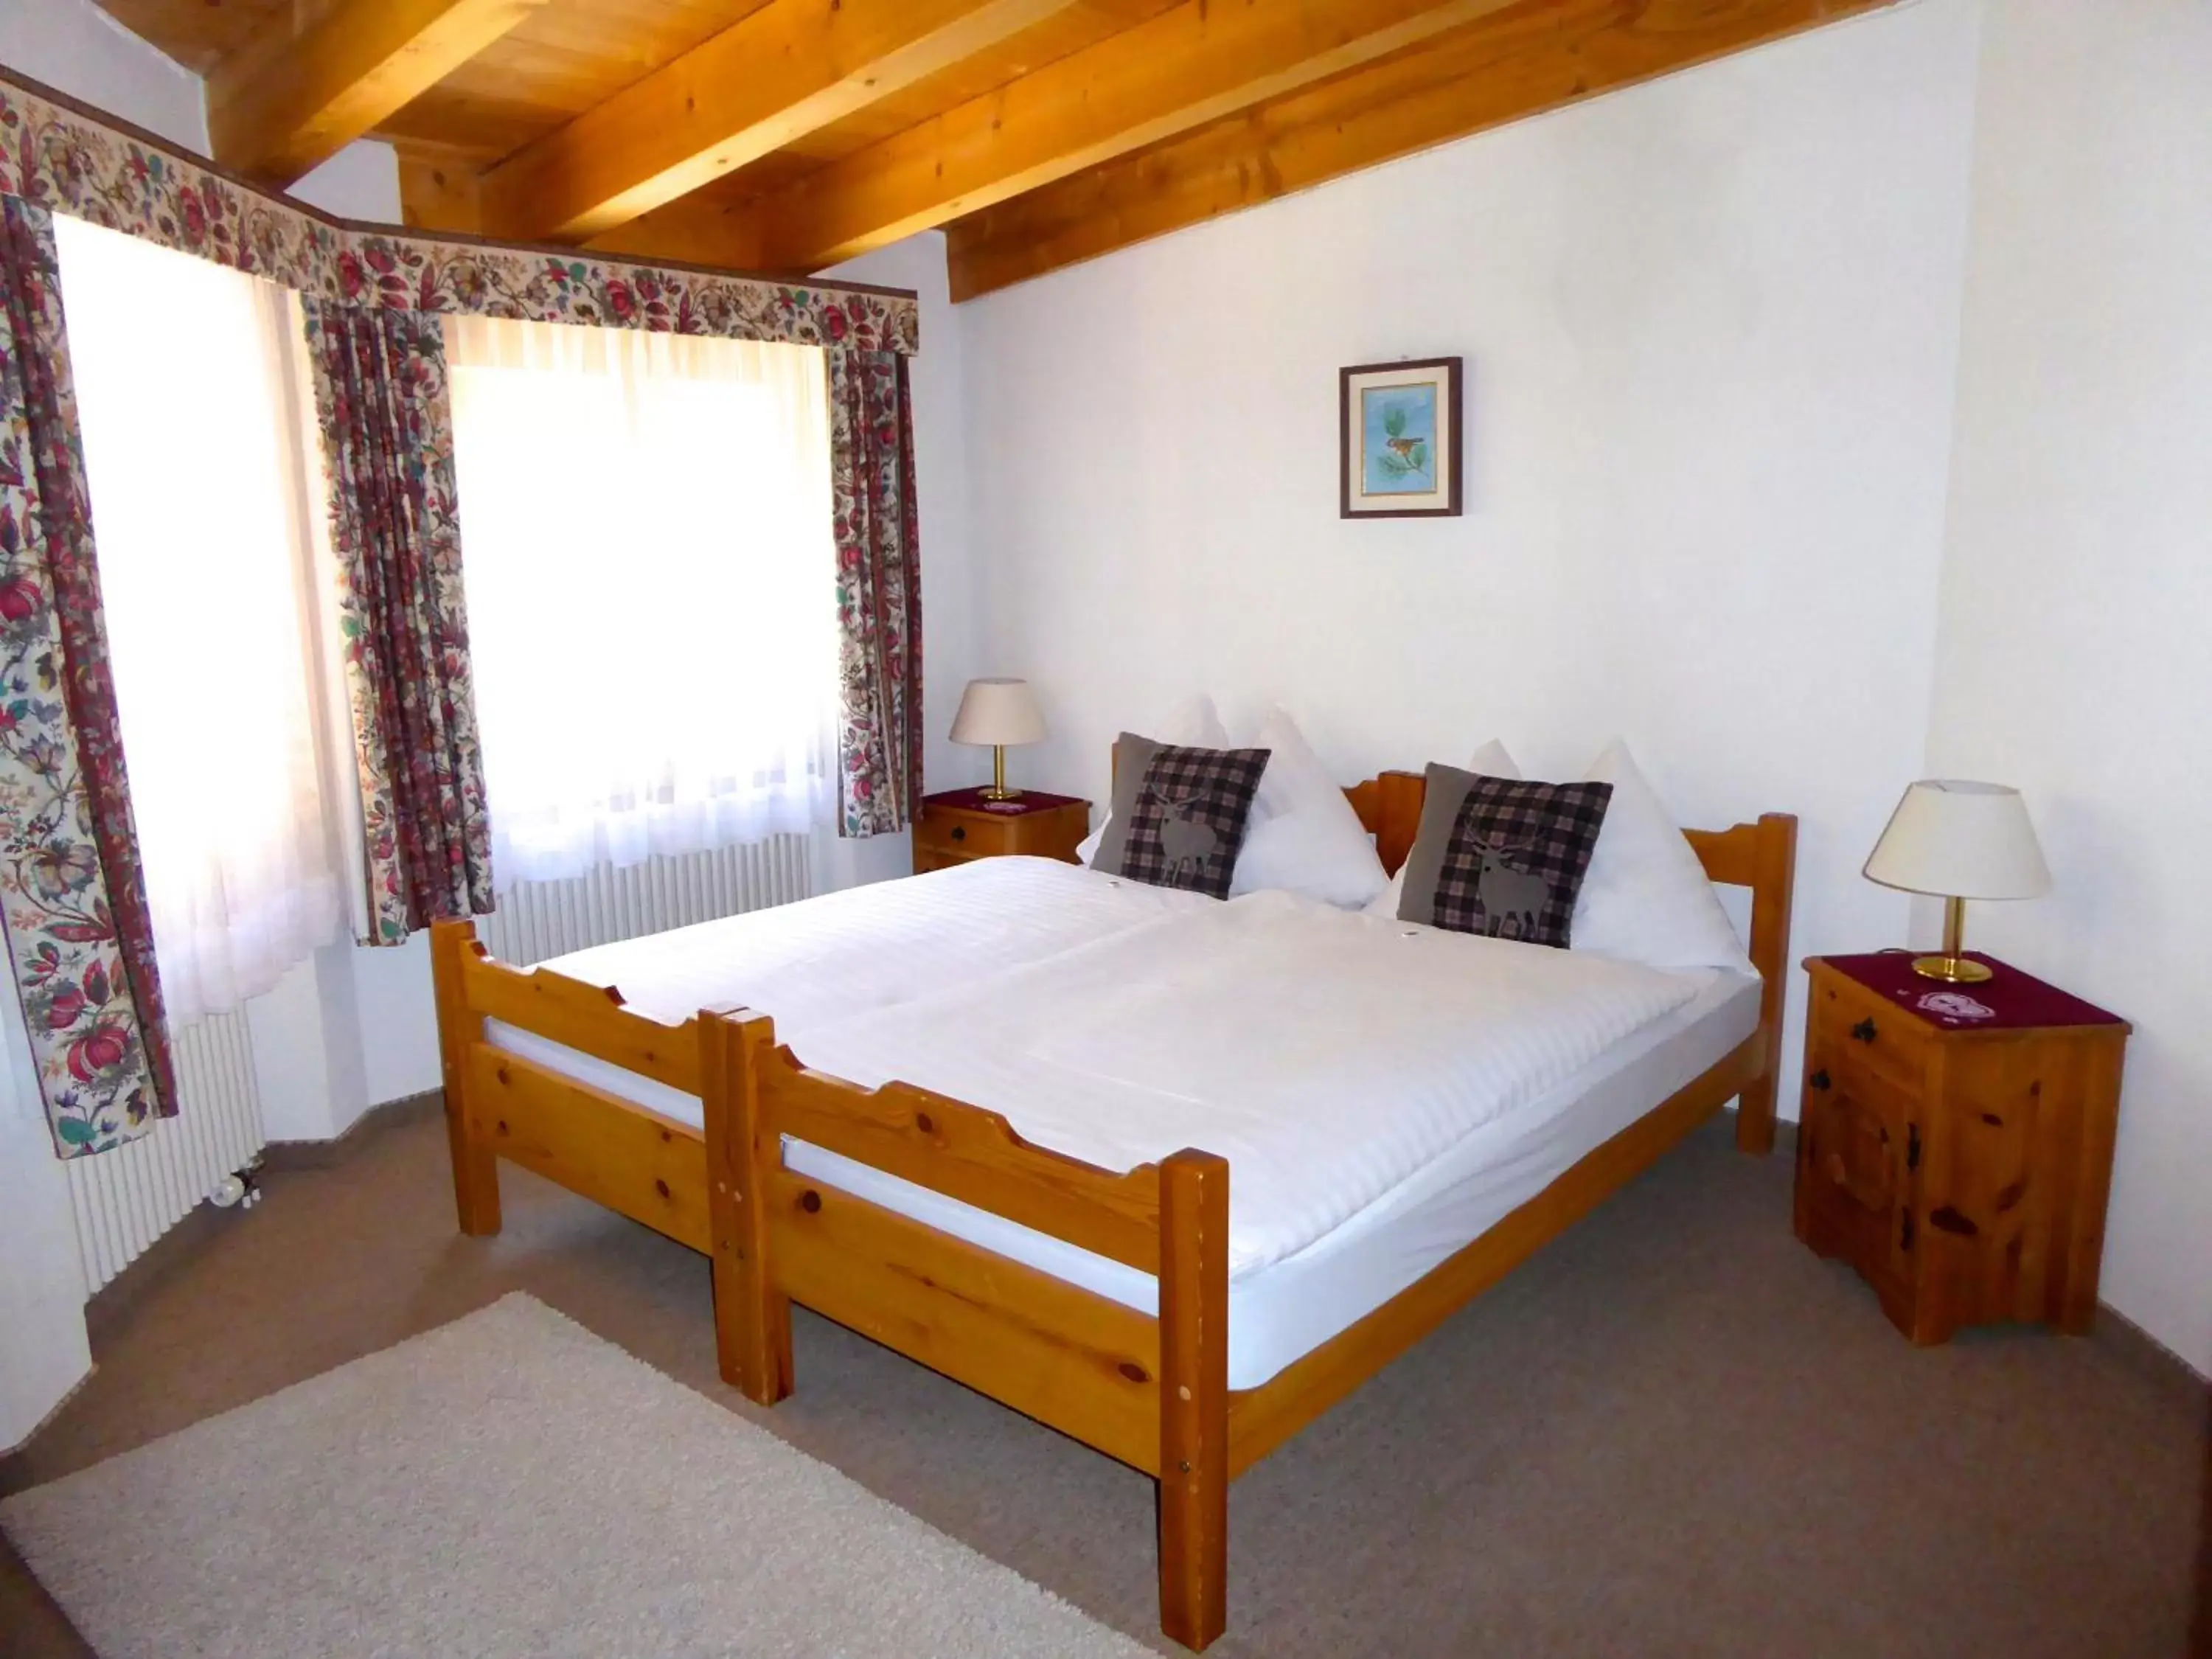 Bedroom, Room Photo in Hotel Roseg-Gletscher